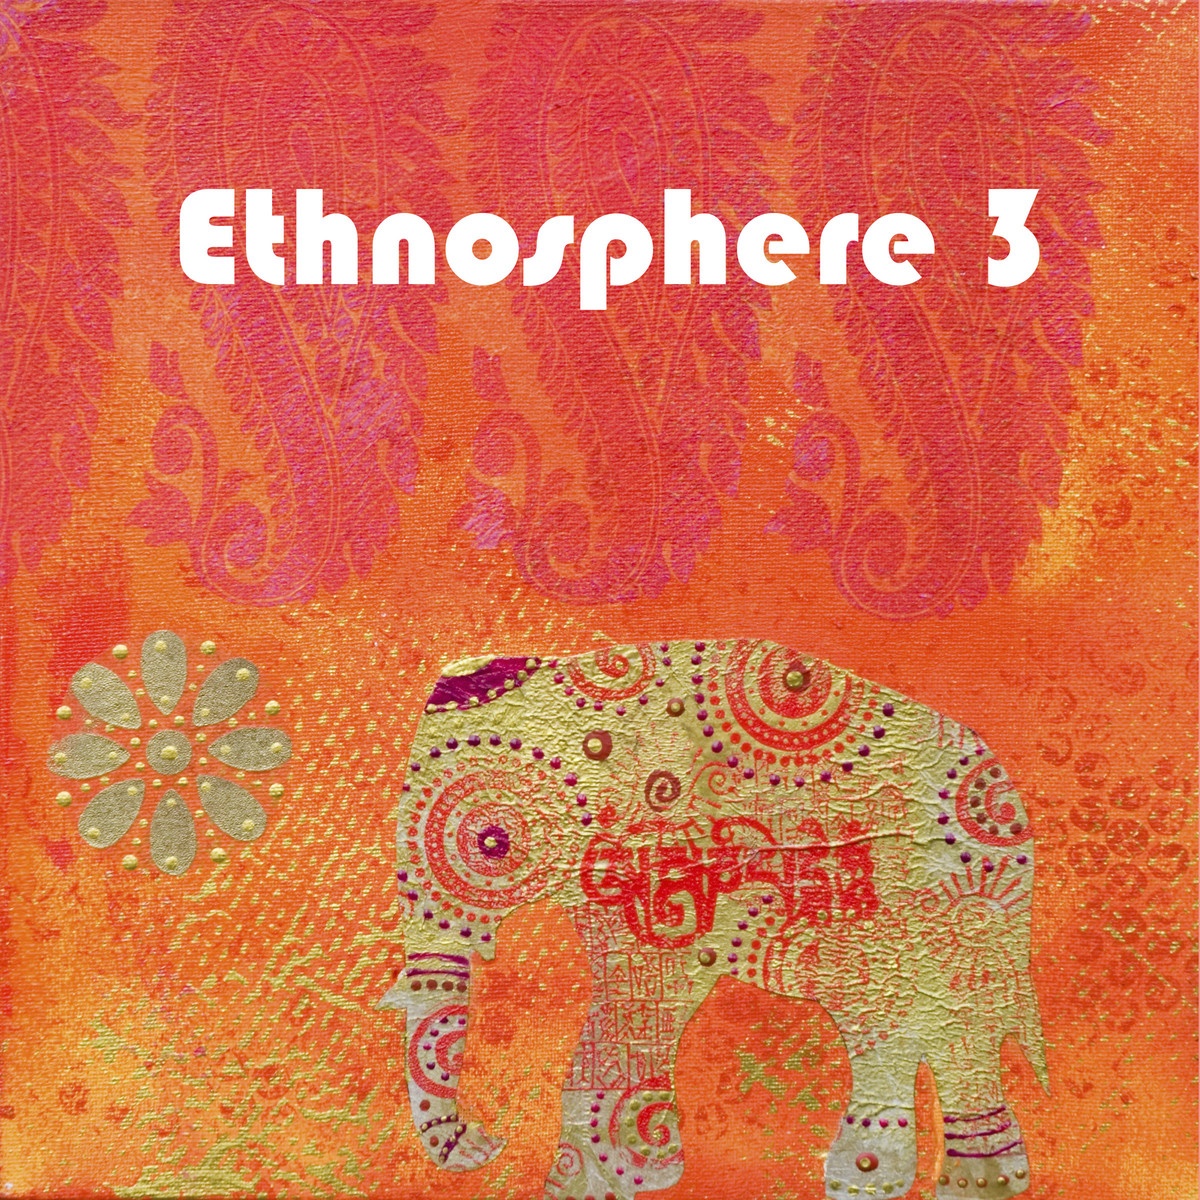 Ethnosphere 3